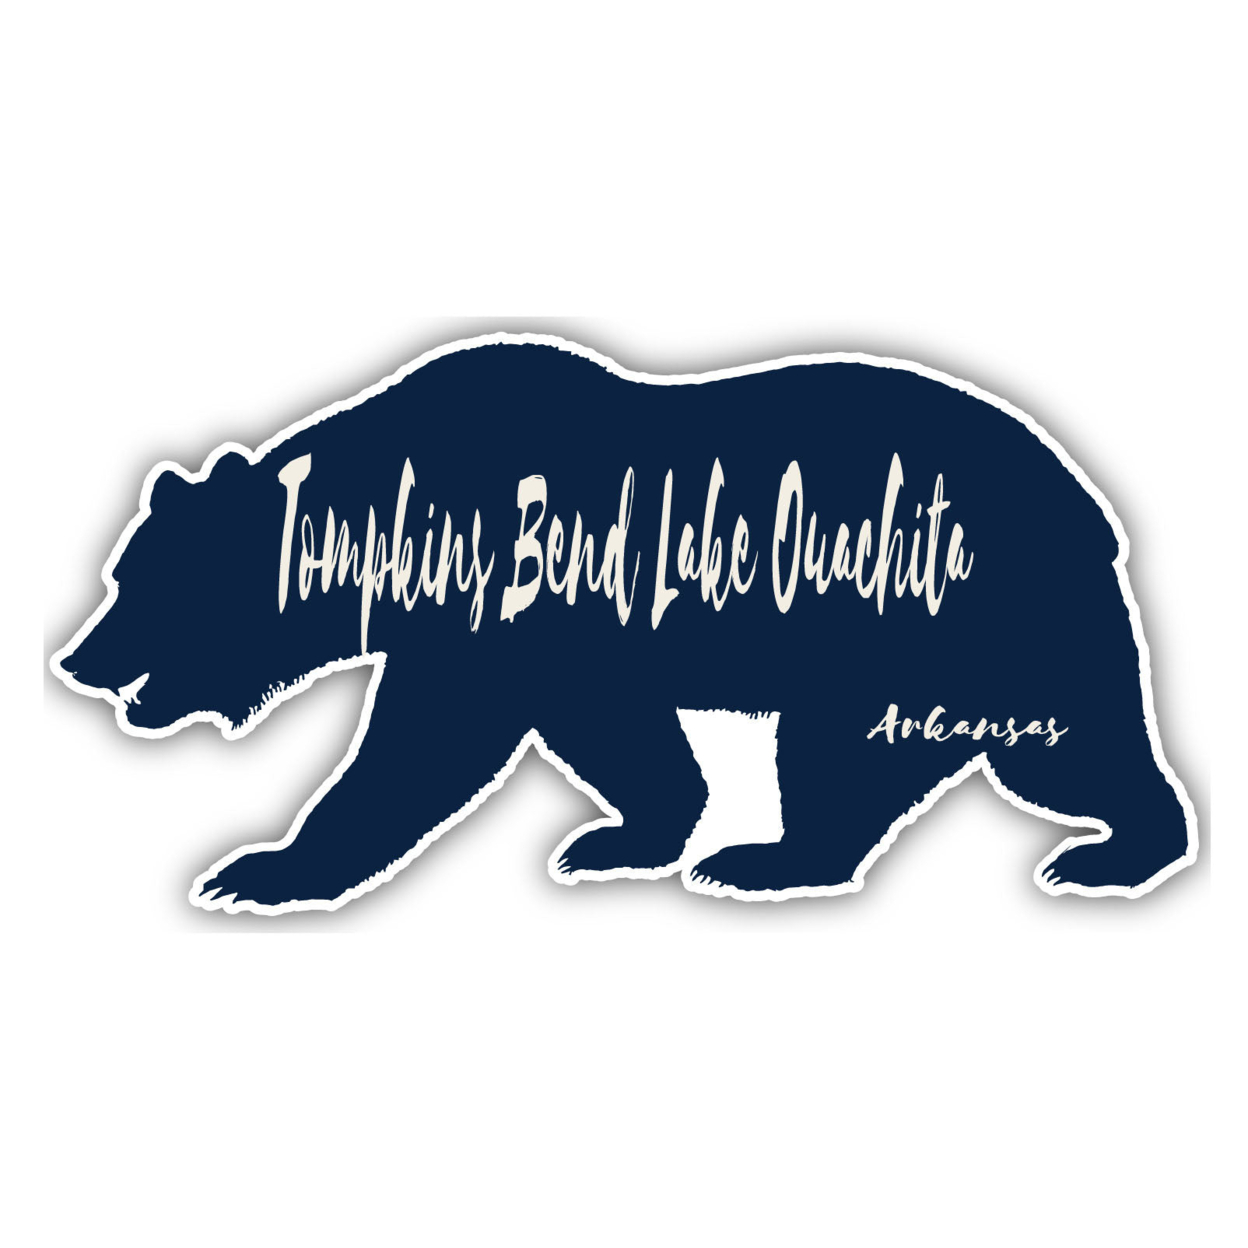 Tompkins Bend Lake Ouachita Arkansas Souvenir Decorative Stickers (Choose Theme And Size) - Single Unit, 2-Inch, Bear